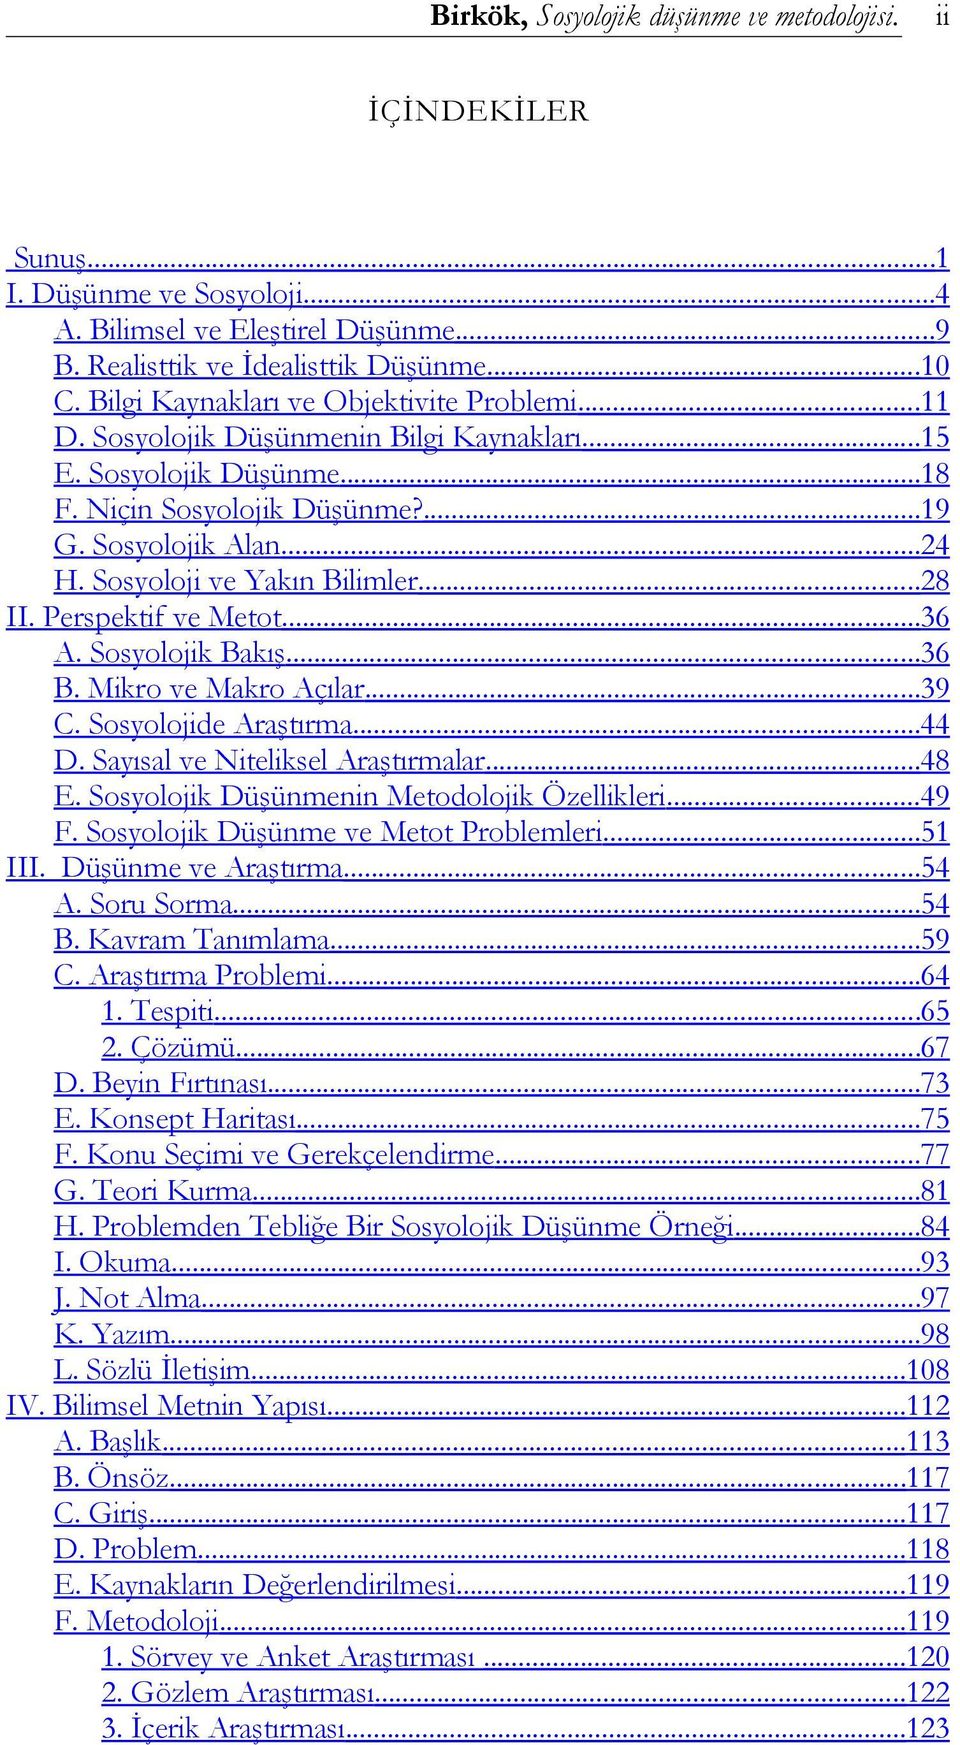 Sosyolojik Bakış...36 B. Mikro ve Makro Açılar...39 C. Sosyolojide Araştırma...44 D. Sayısal ve Niteliksel Araştırmalar...48 E. Sosyolojik Düşünmenin Metodolojik Özellikleri...49 F.